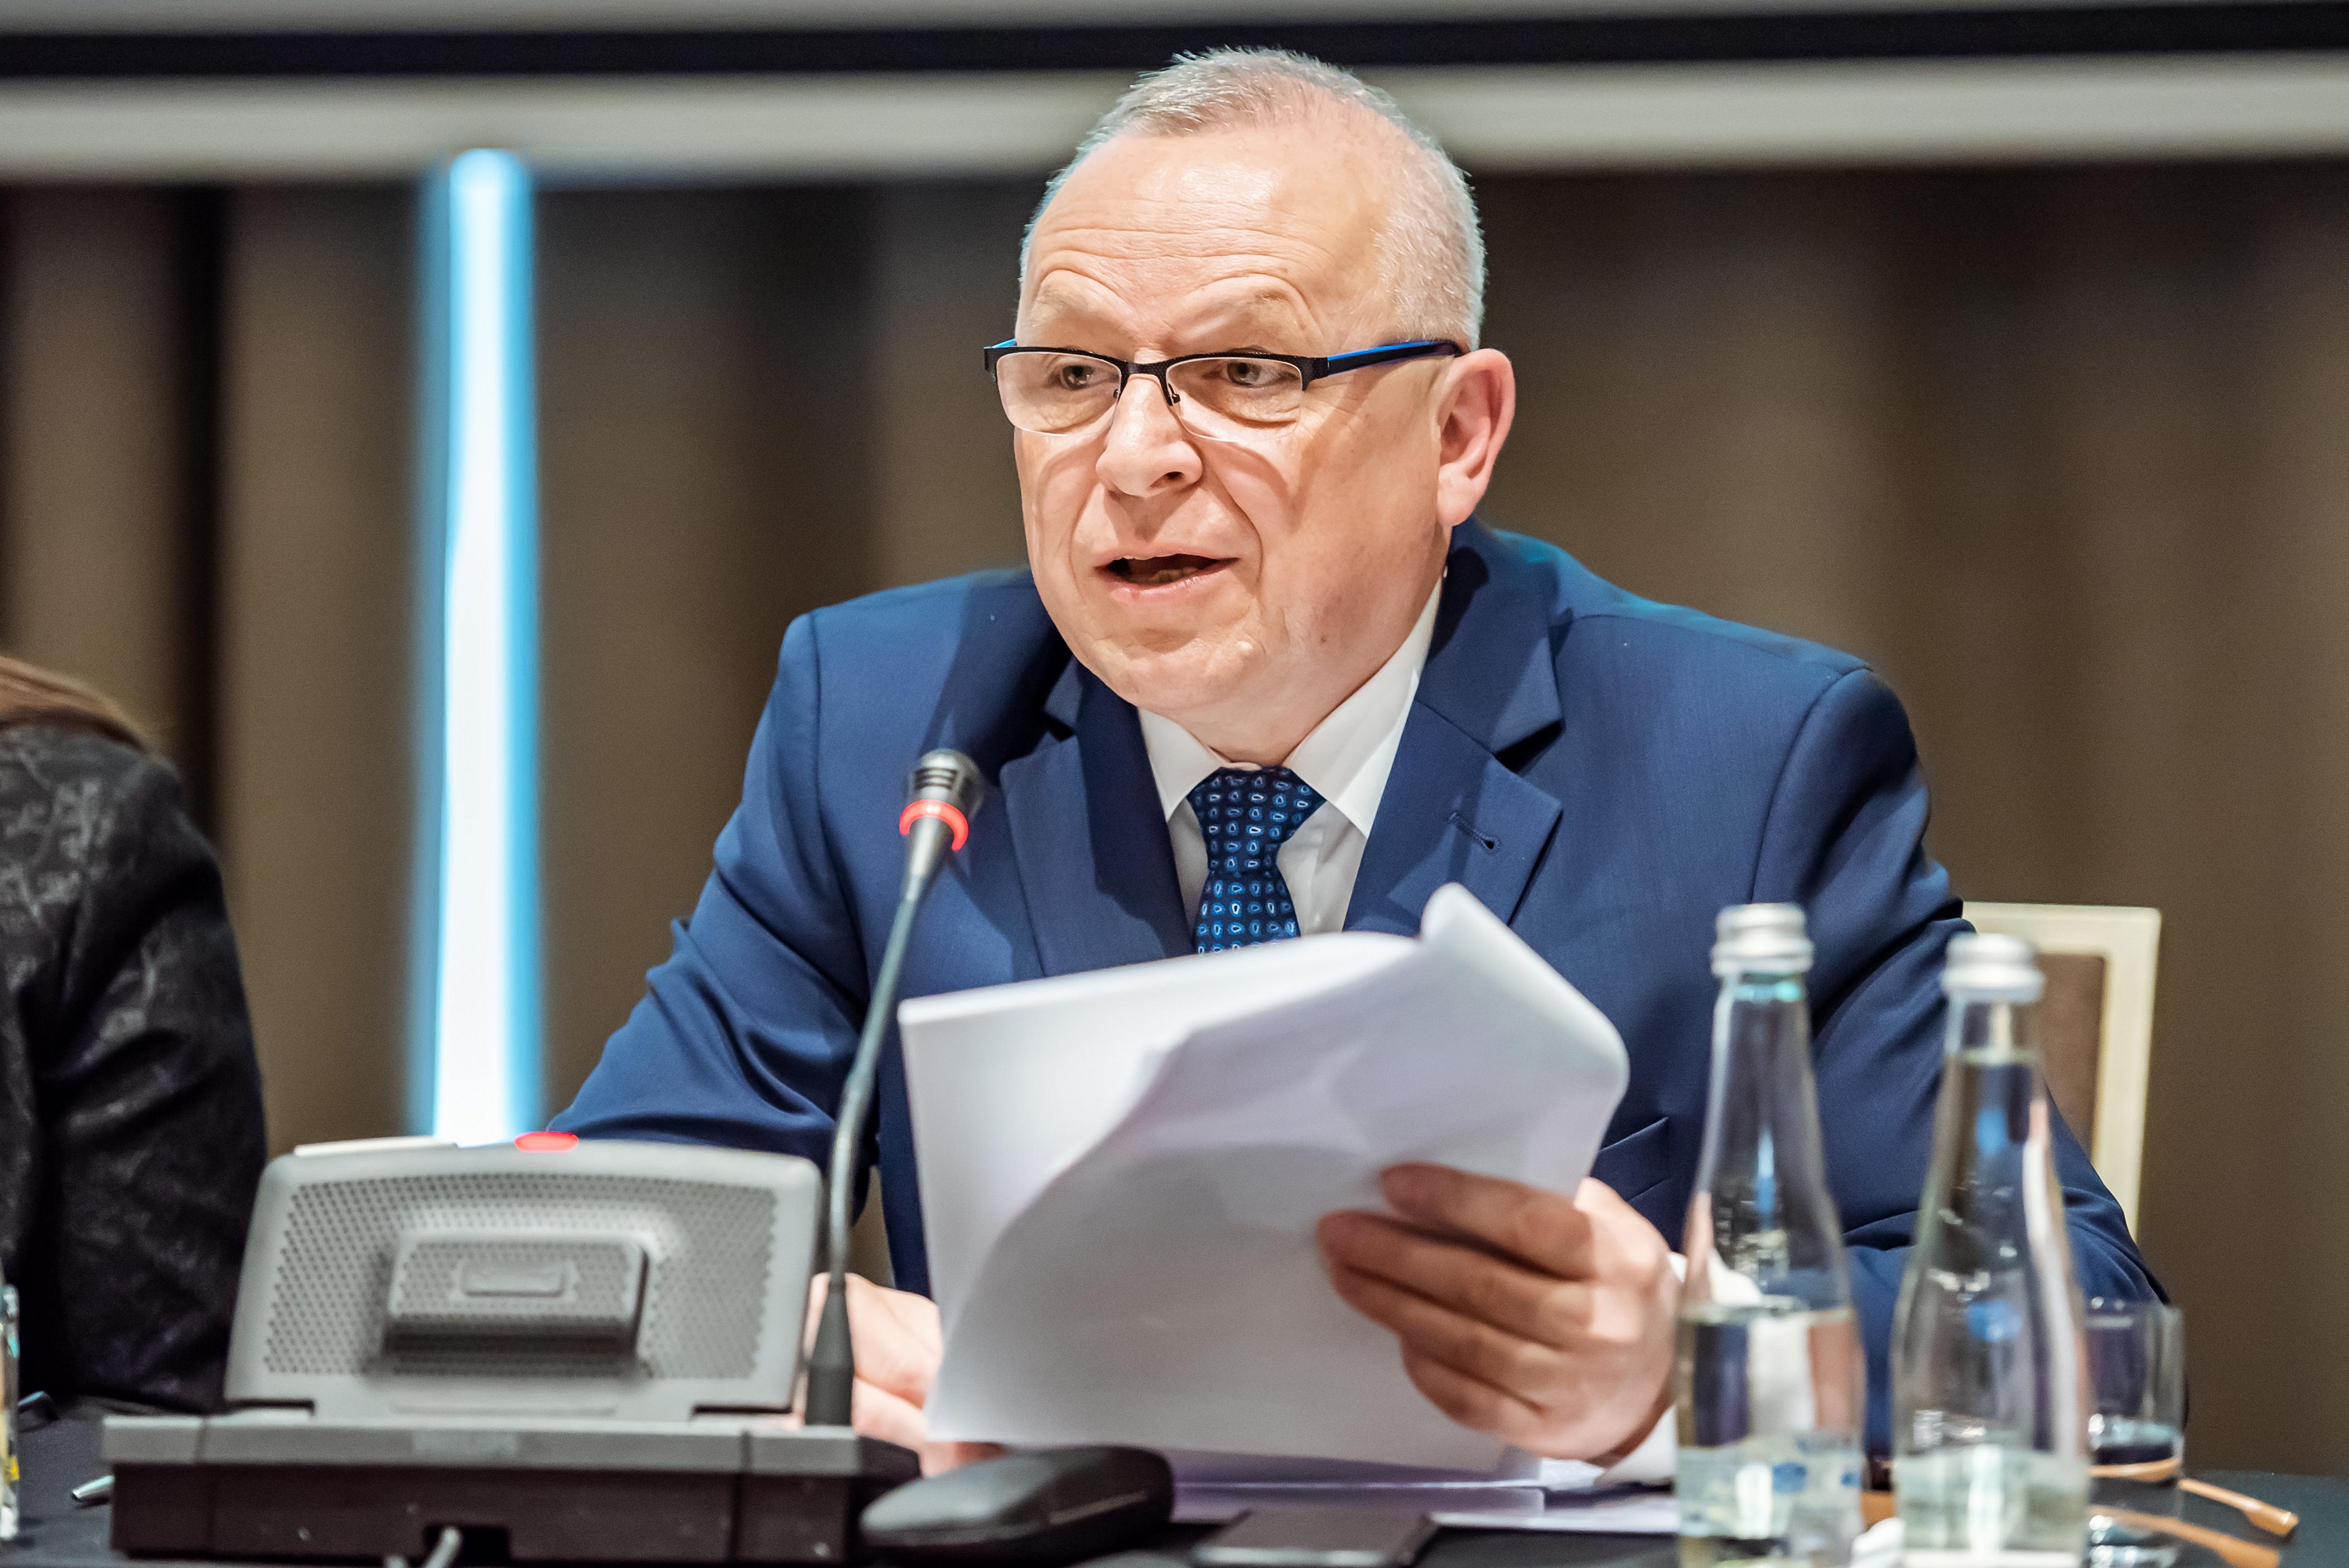 Prezes Zarządu ZPP Andrzej Płonka w wywiadzie dla Portalu Samorządowego podsumował mijający rok